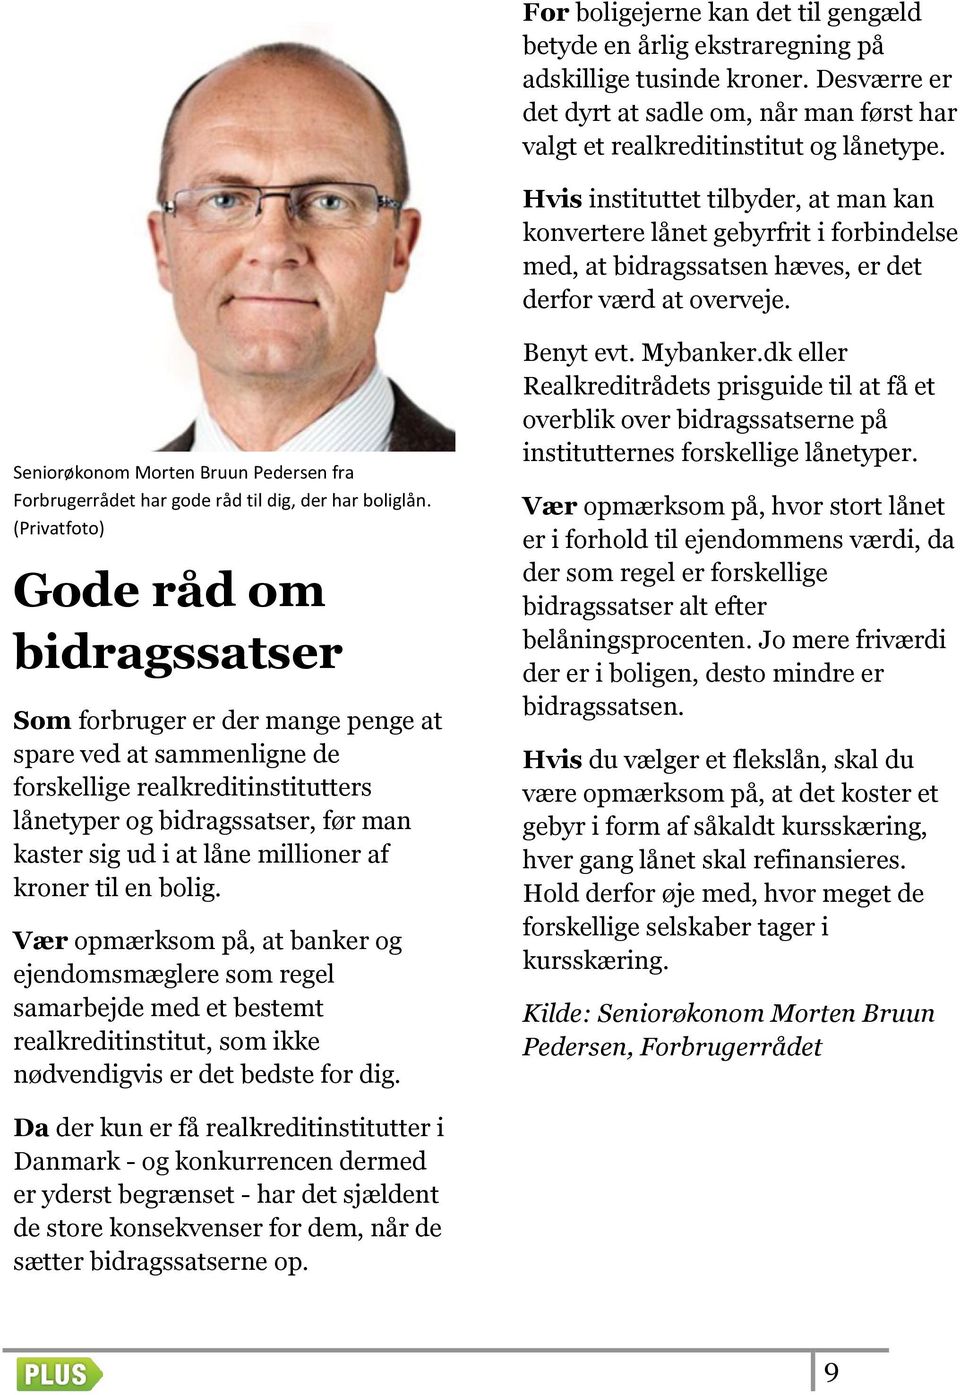 Seniorøkonom Morten Bruun Pedersen fra Forbrugerrådet har gode råd til dig, der har boliglån.